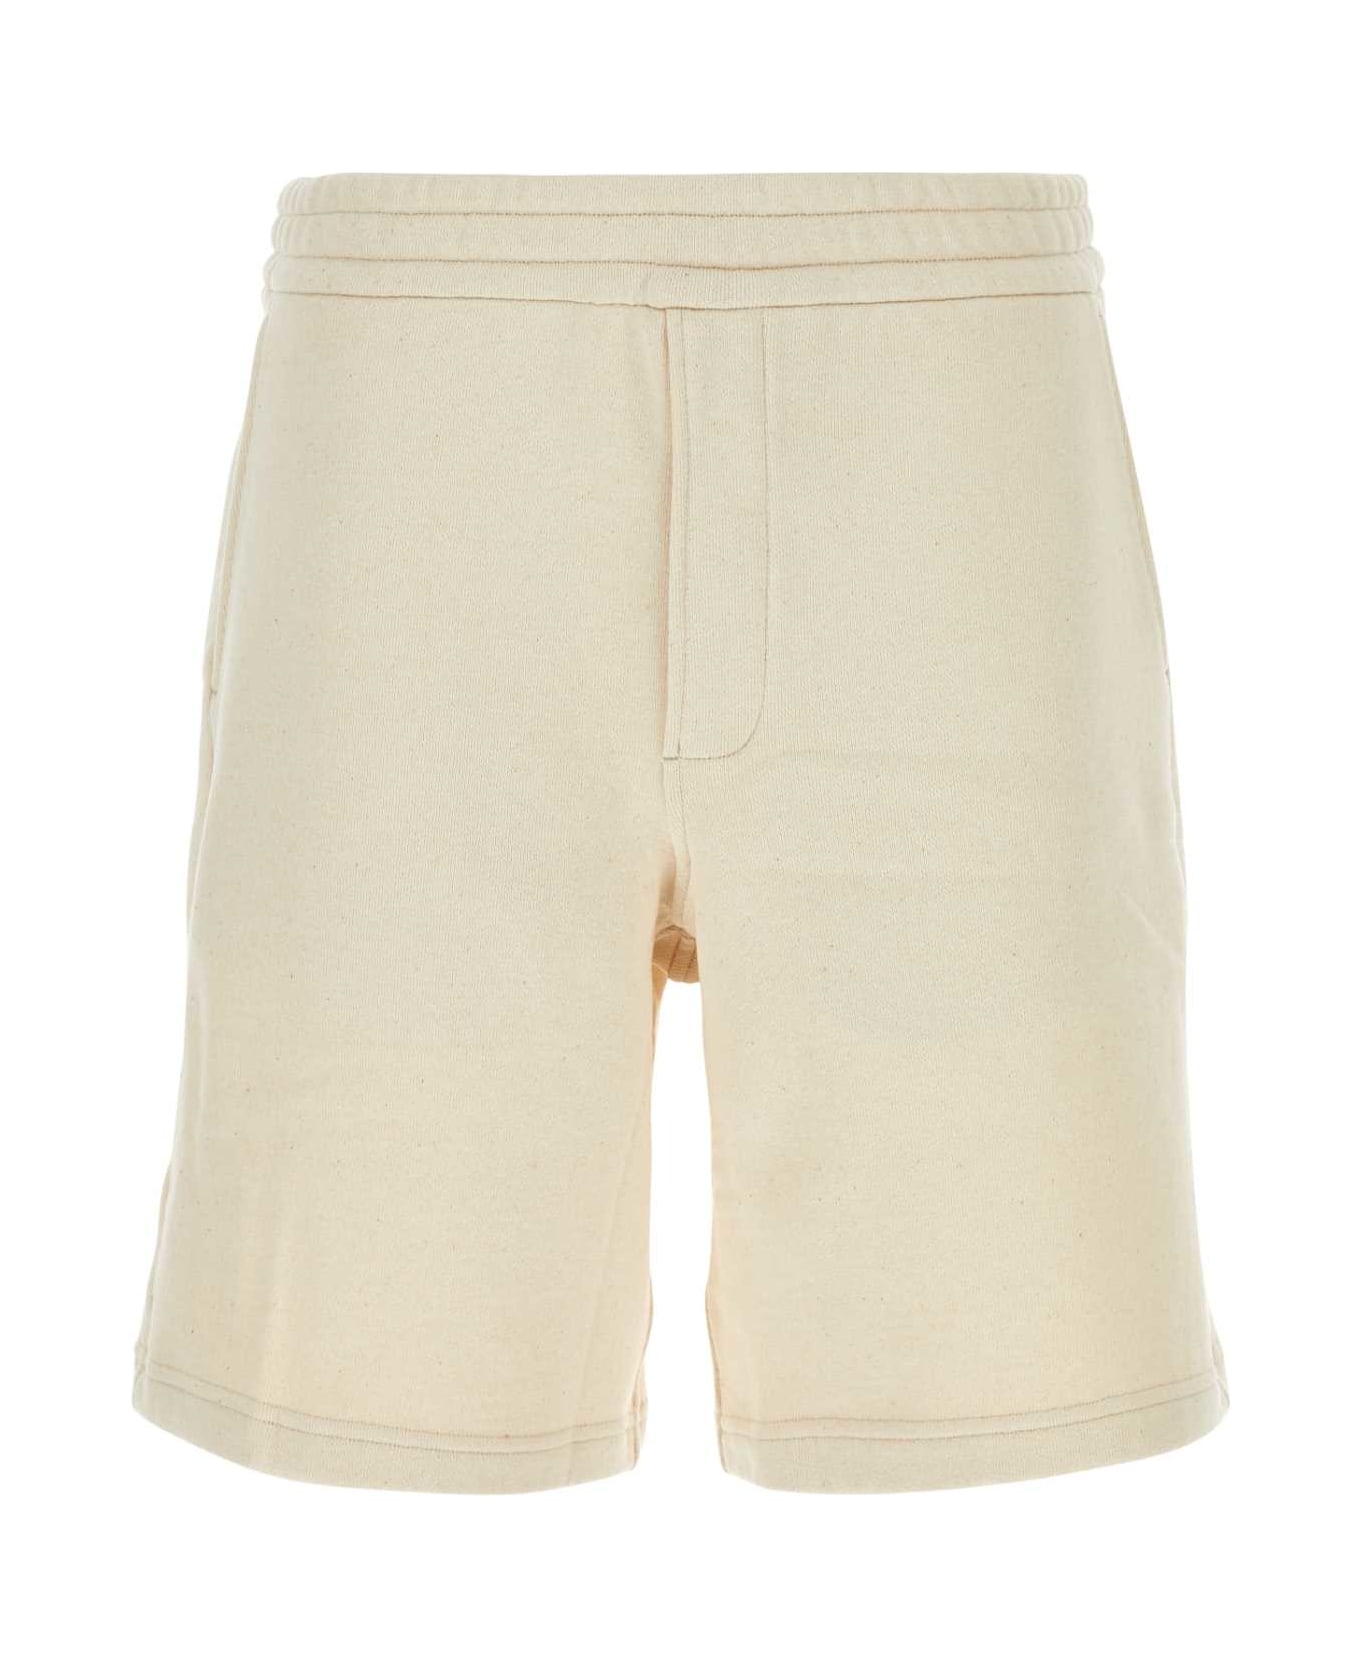 Prada Sand Cotton Bermuda Shorts - NATURALE ショートパンツ